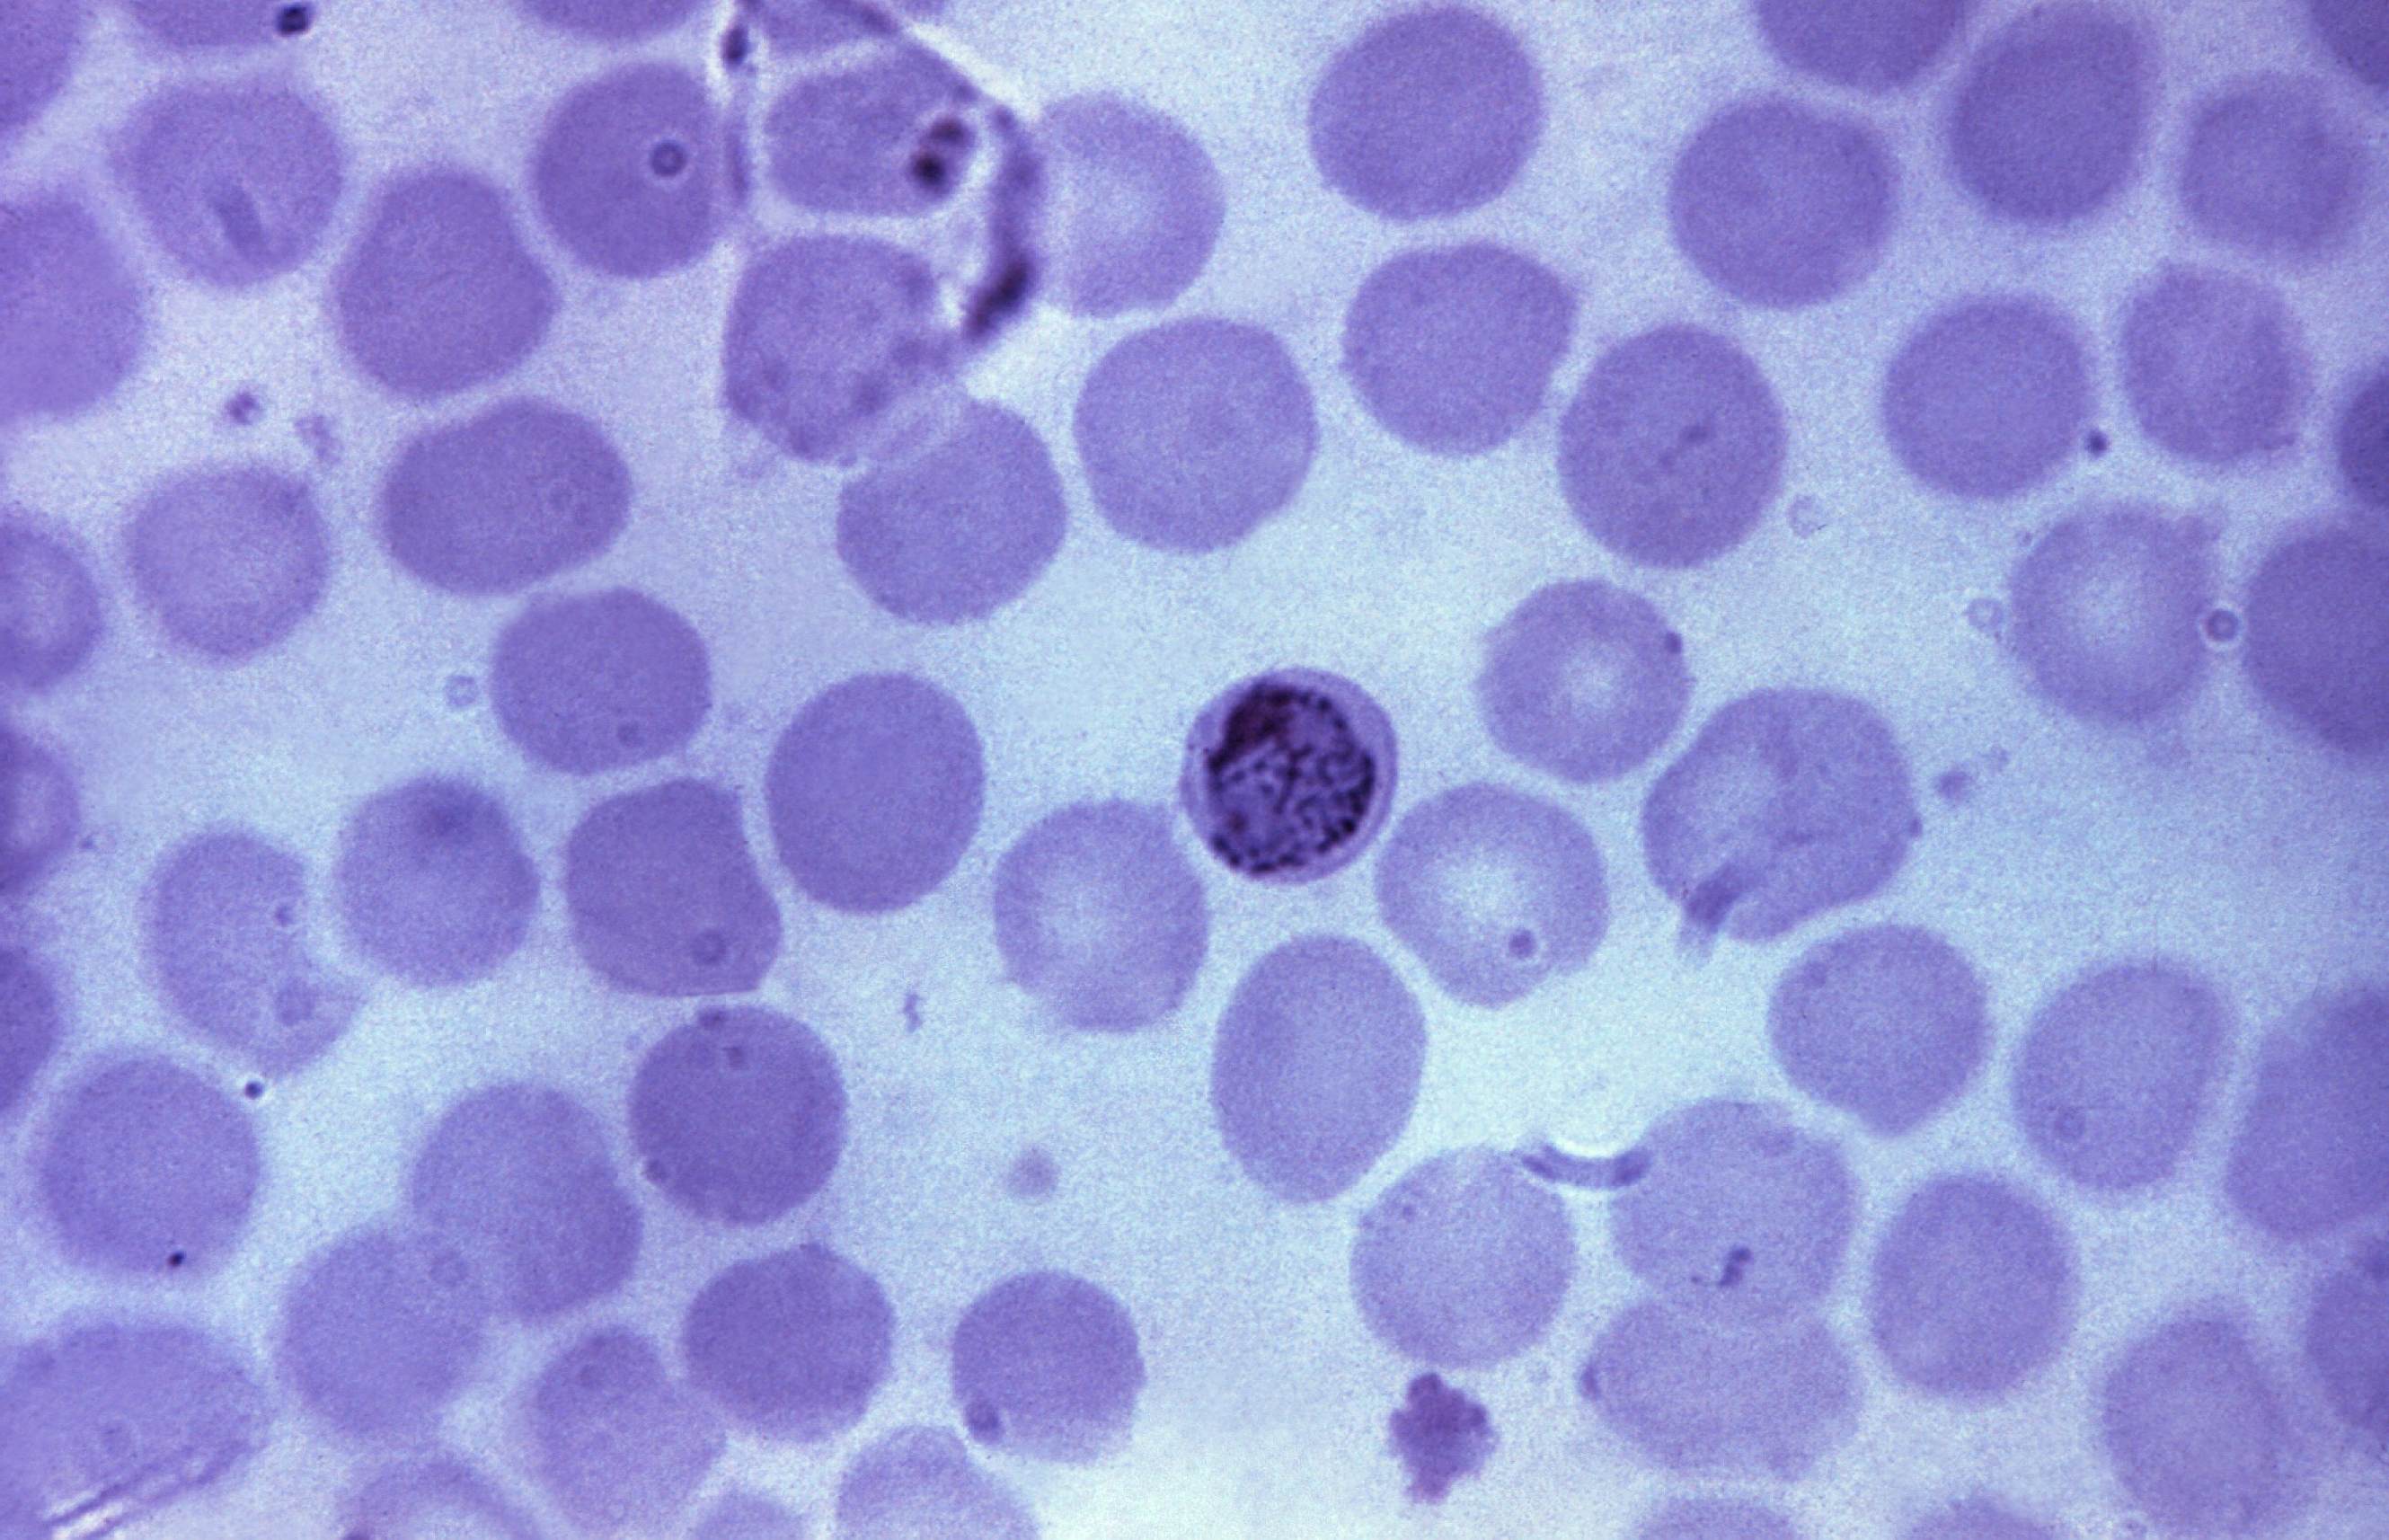 Plasmodium Malariae Under Microscope